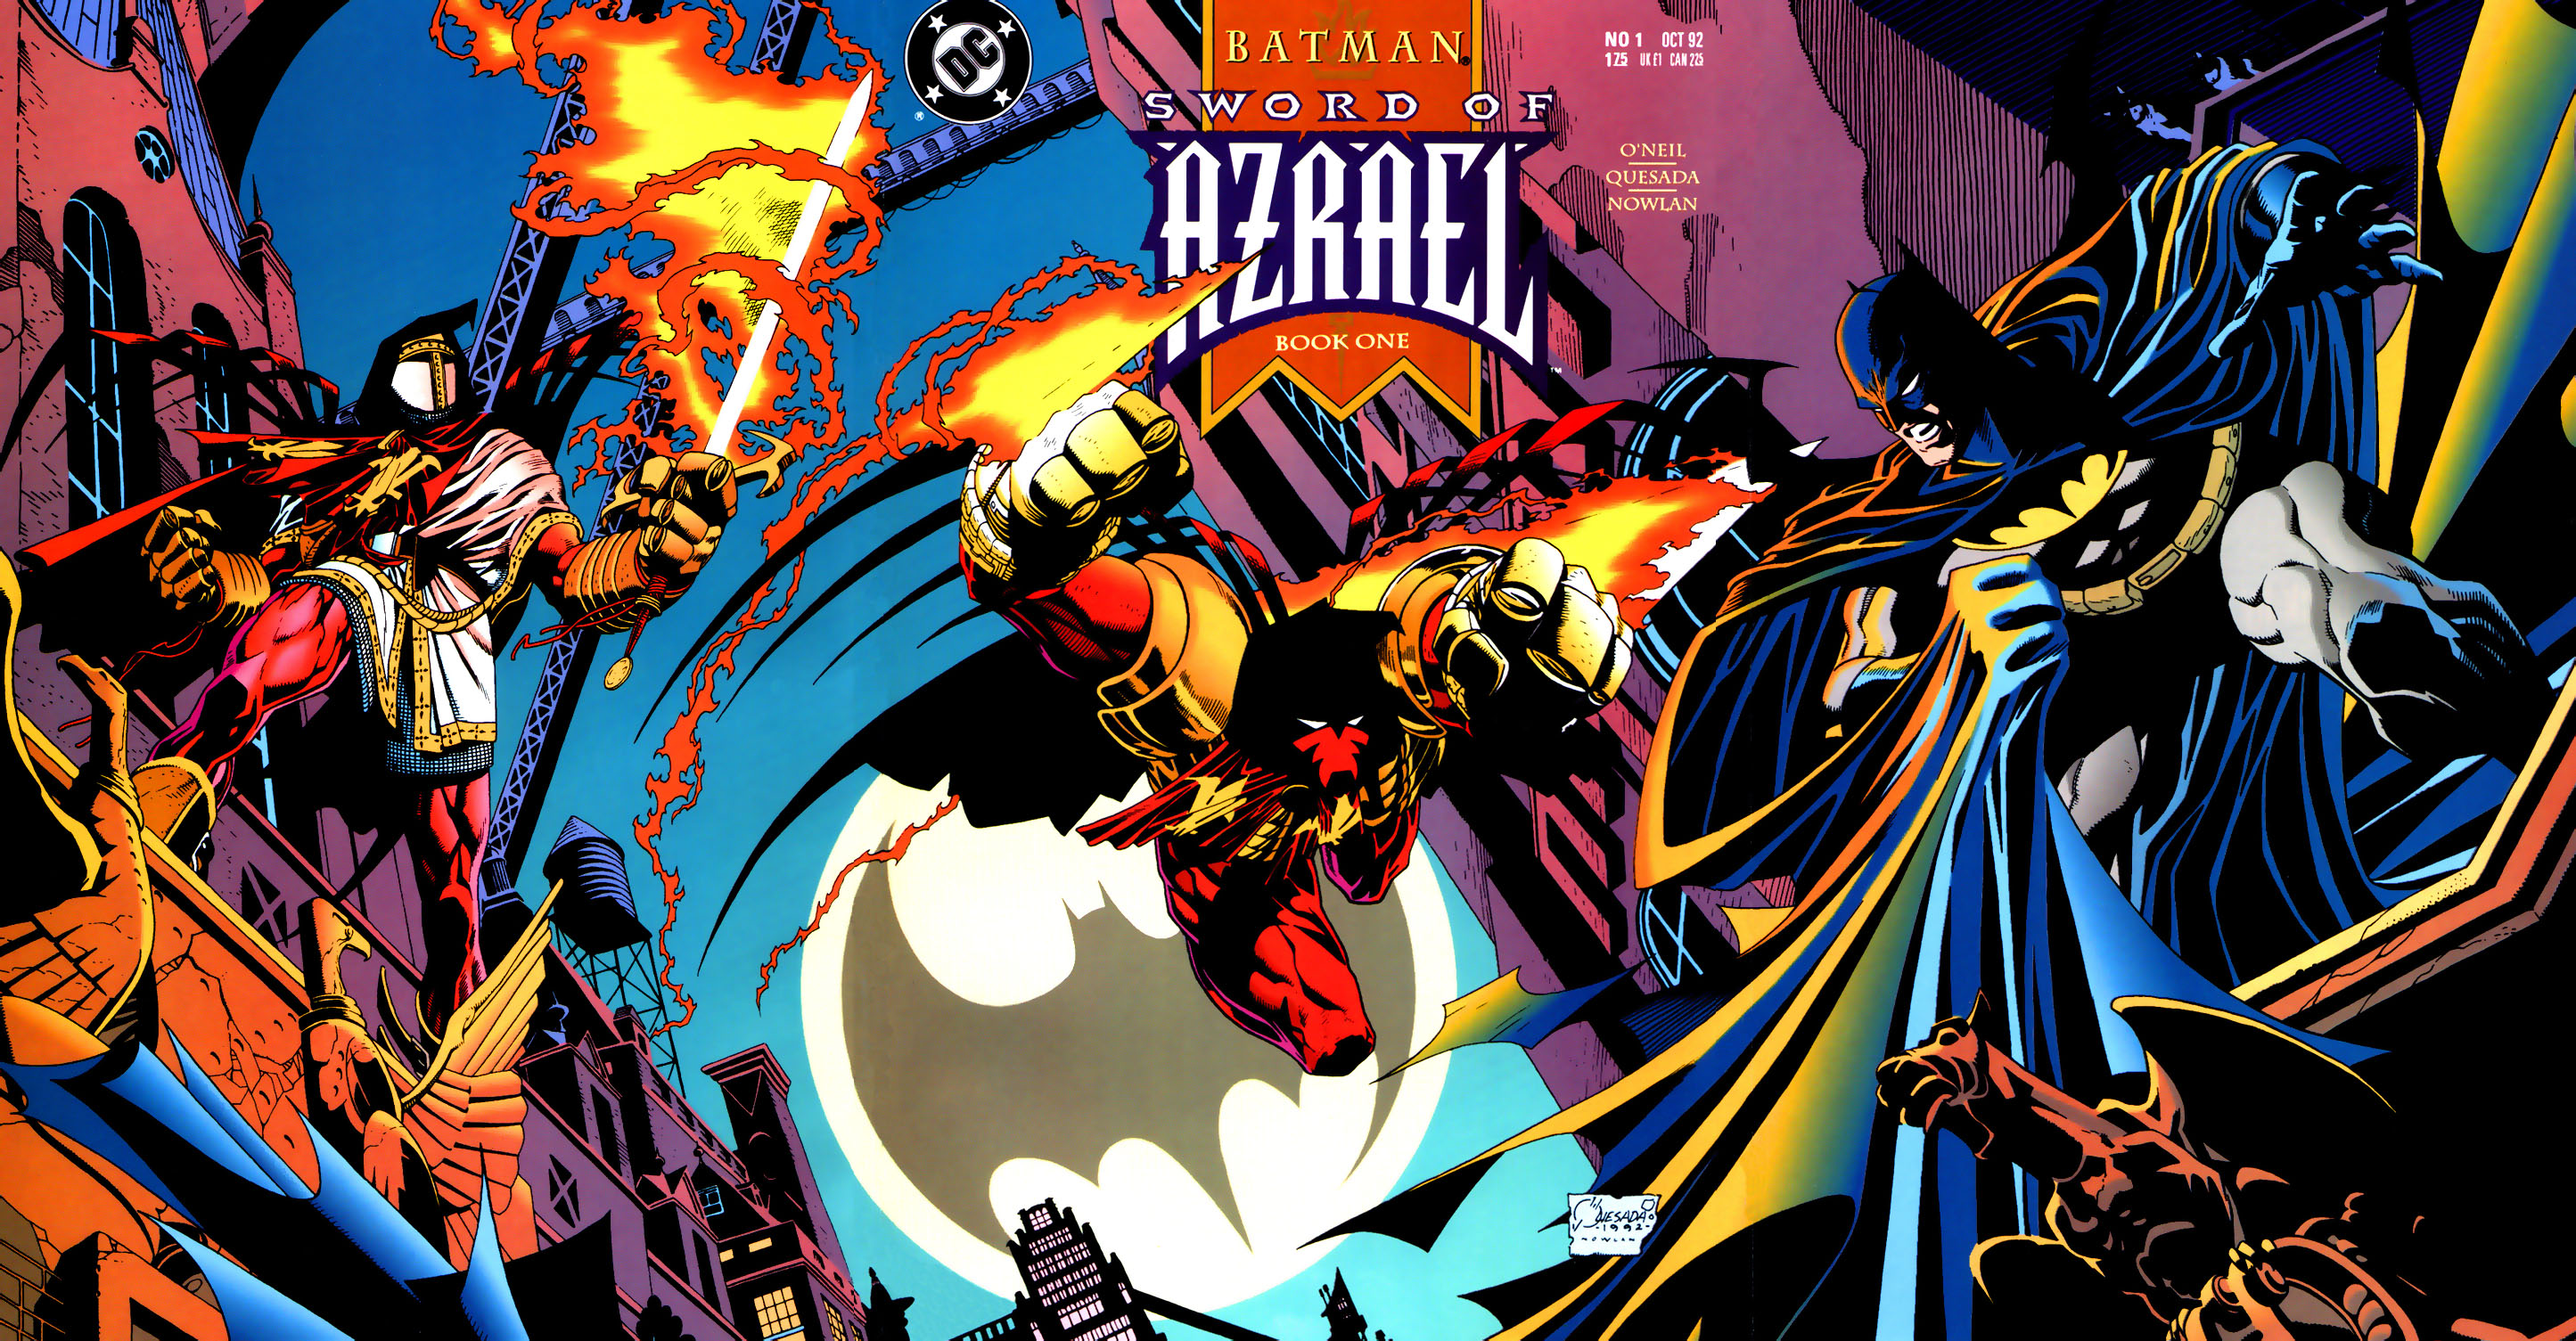 Details about   BATMAN SWORD OF AZRAEL #4 NMINT Early Appearance  AZRAEL DC Comic 1993 Quesada